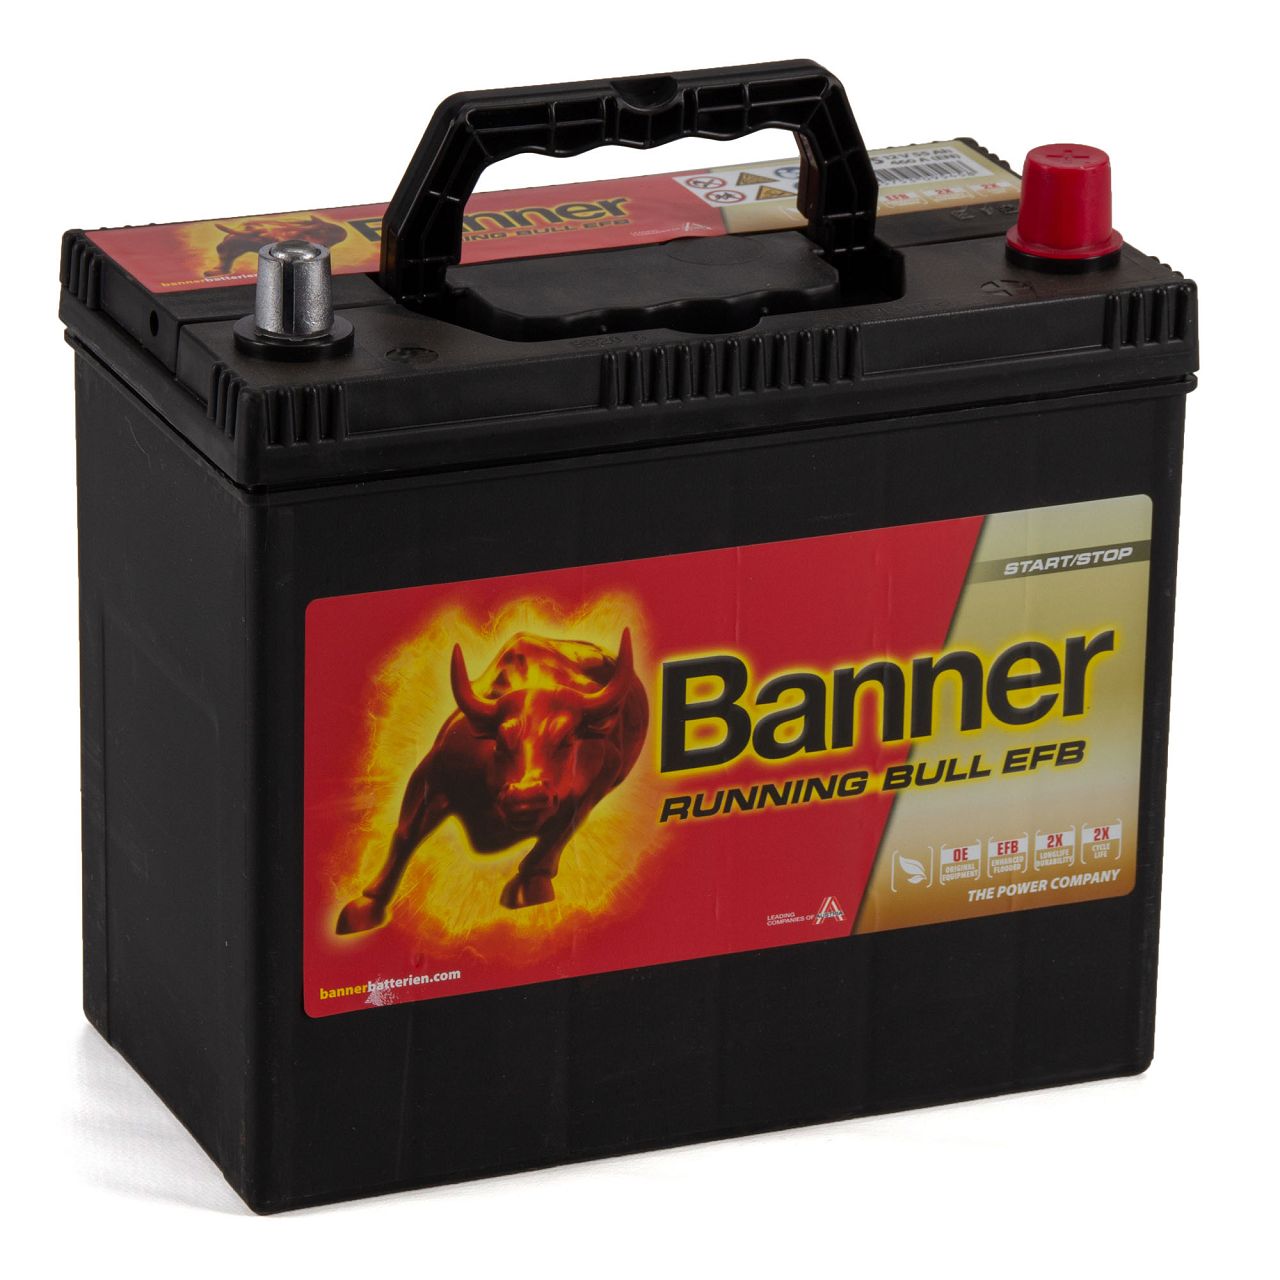 BANNER 55515 Running Bull EFB Autobatterie Batterie 12V 55Ah 460A